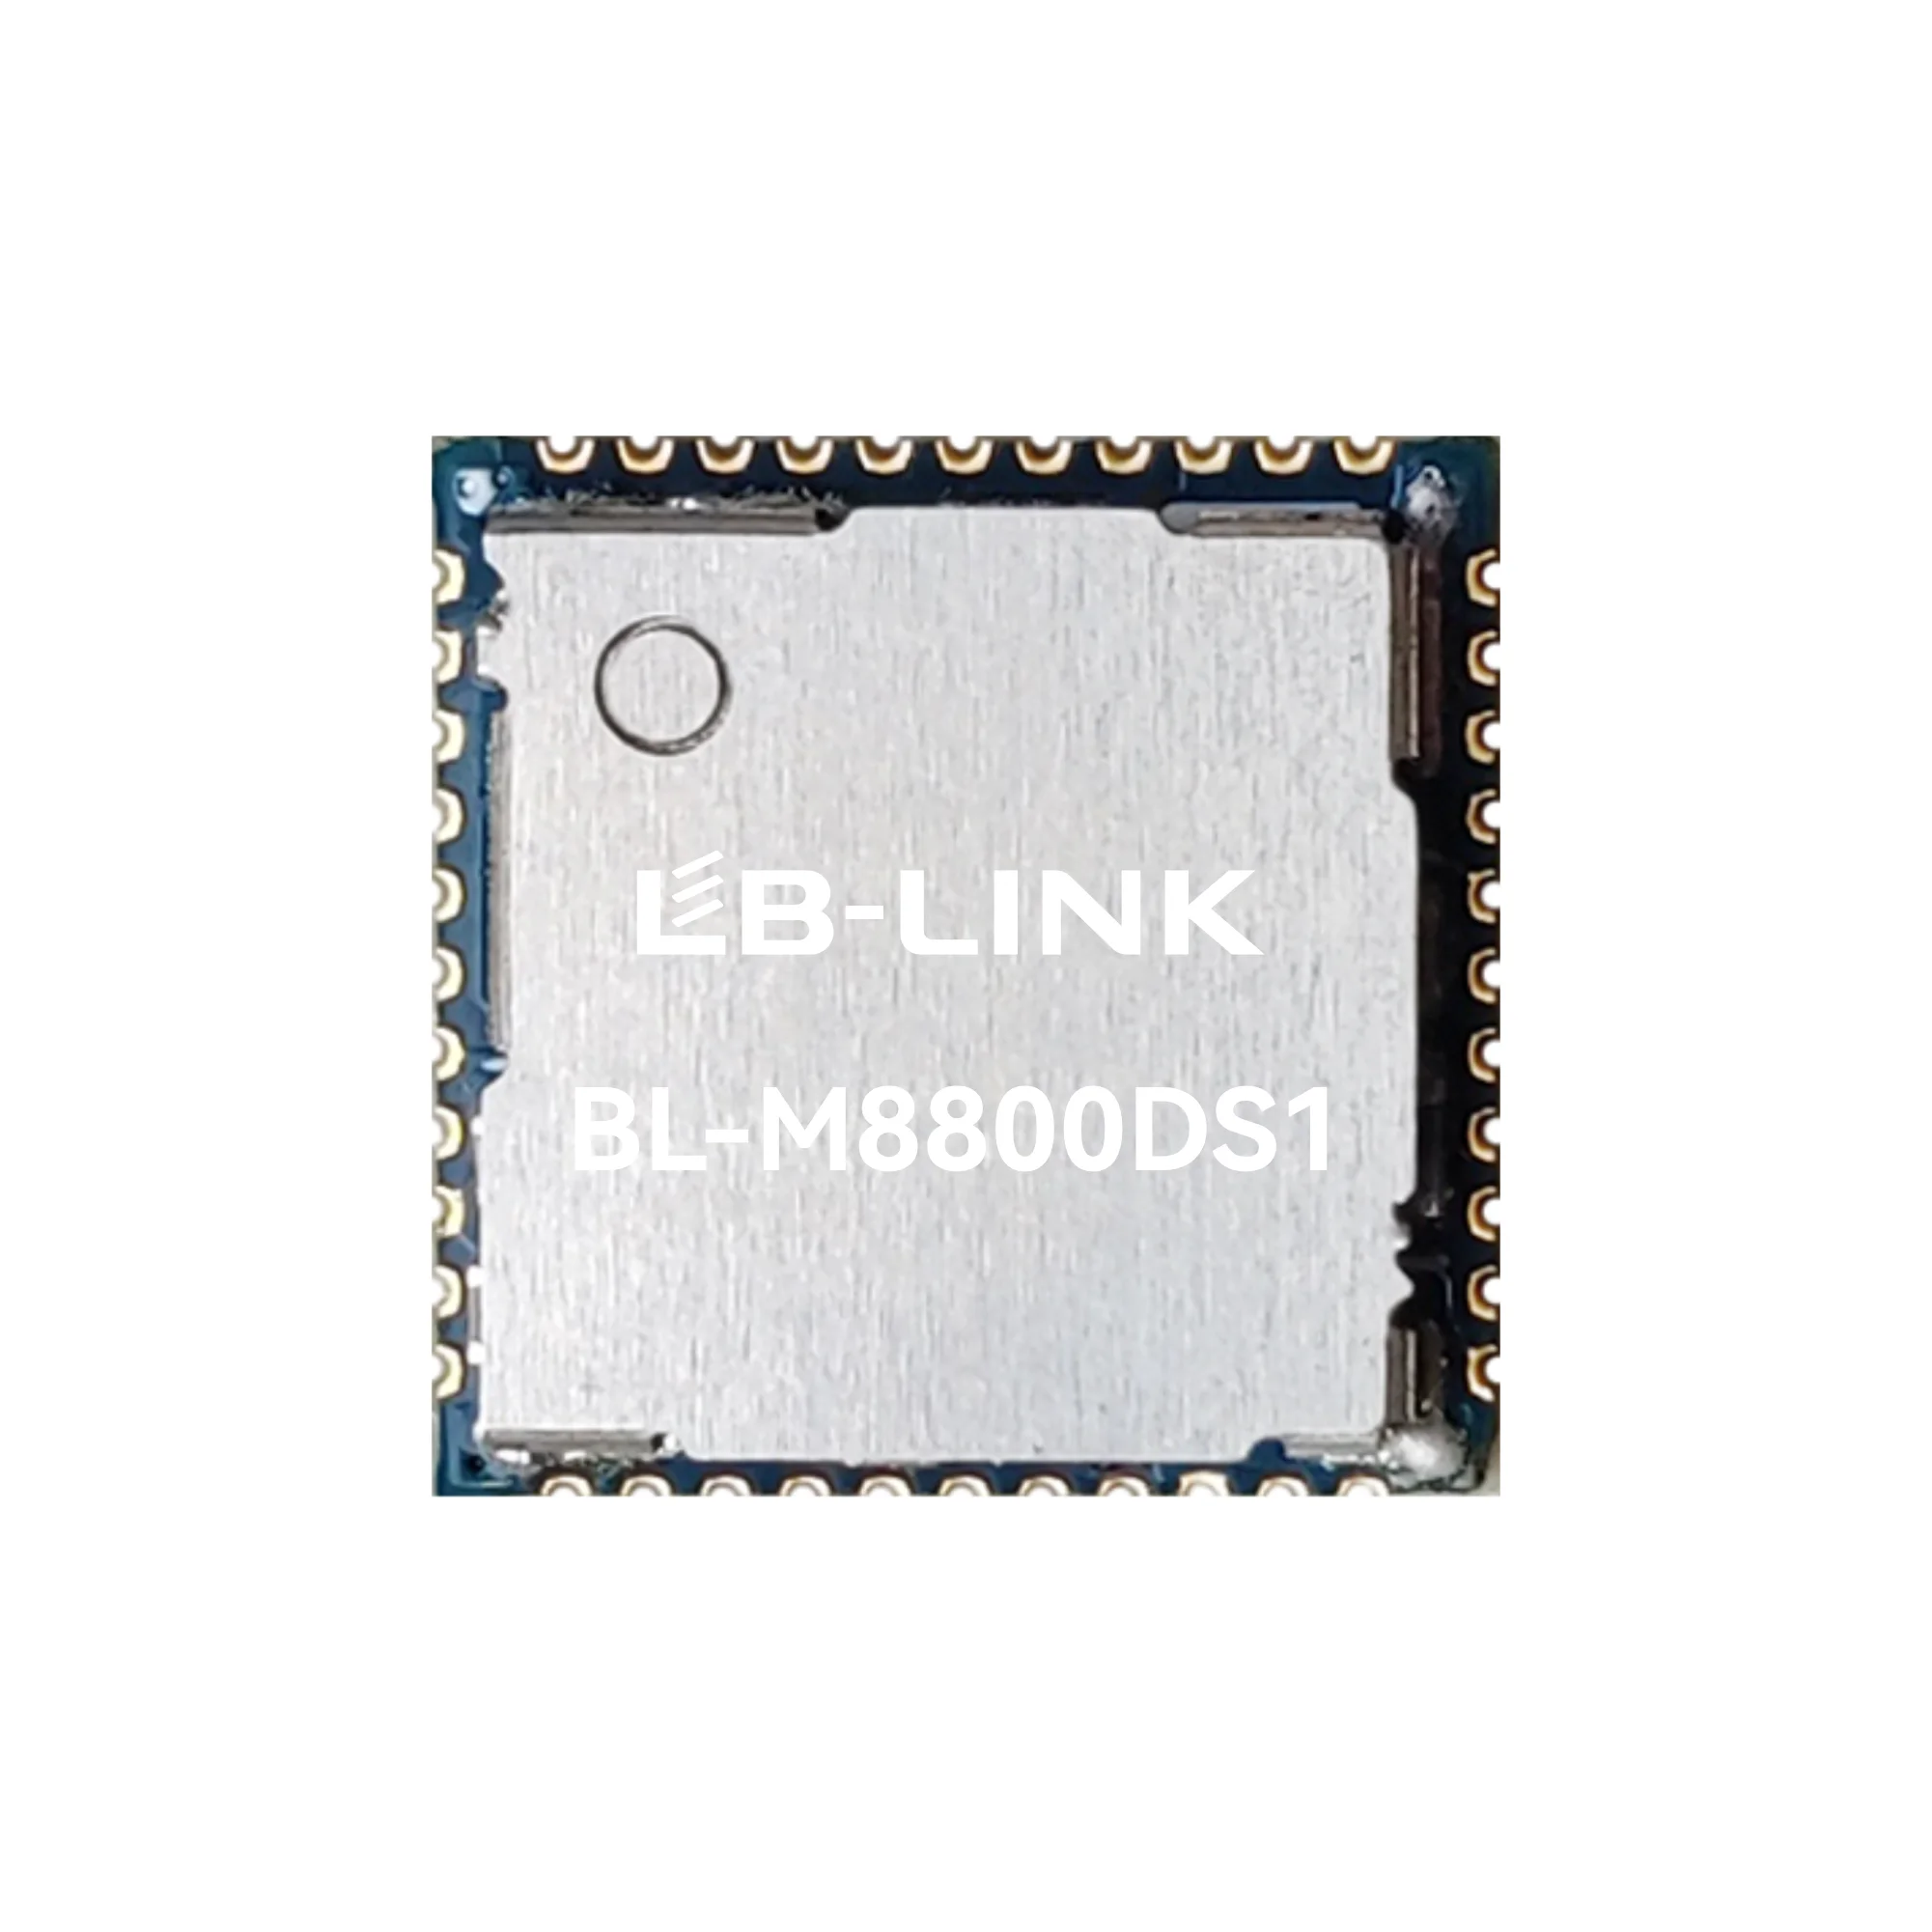 WiFi 6 Modules - BL-M8800DS1 - 1T1R 802.11a/b/g/n/ac/ax WiFi+B5.0 Module